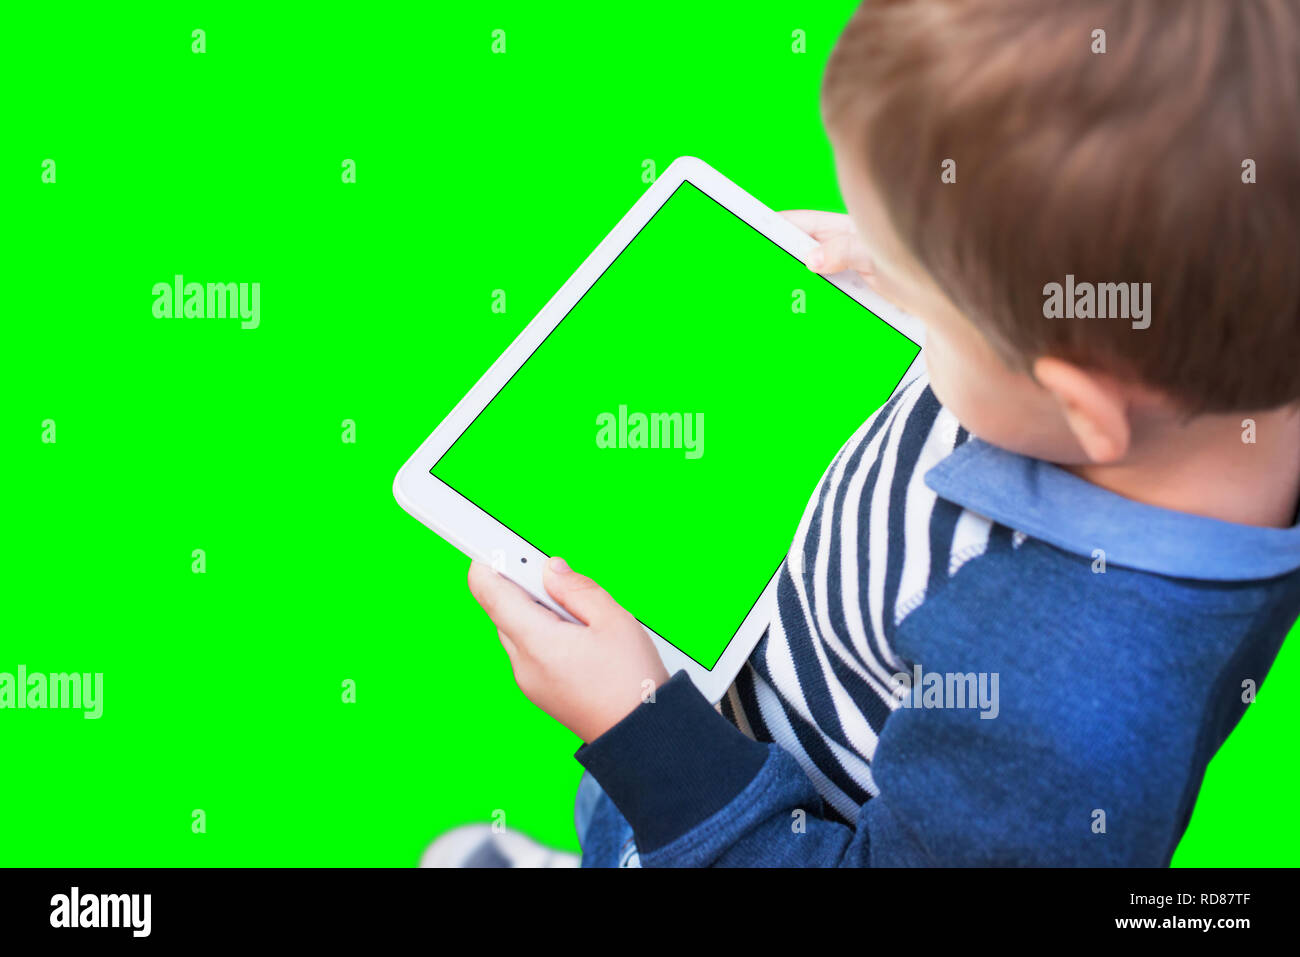 Jungen spielen Spiel auf weiße Tablette. Isolierte Bildschirm und Hintergrund in grün, Chroma Key. Stockfoto